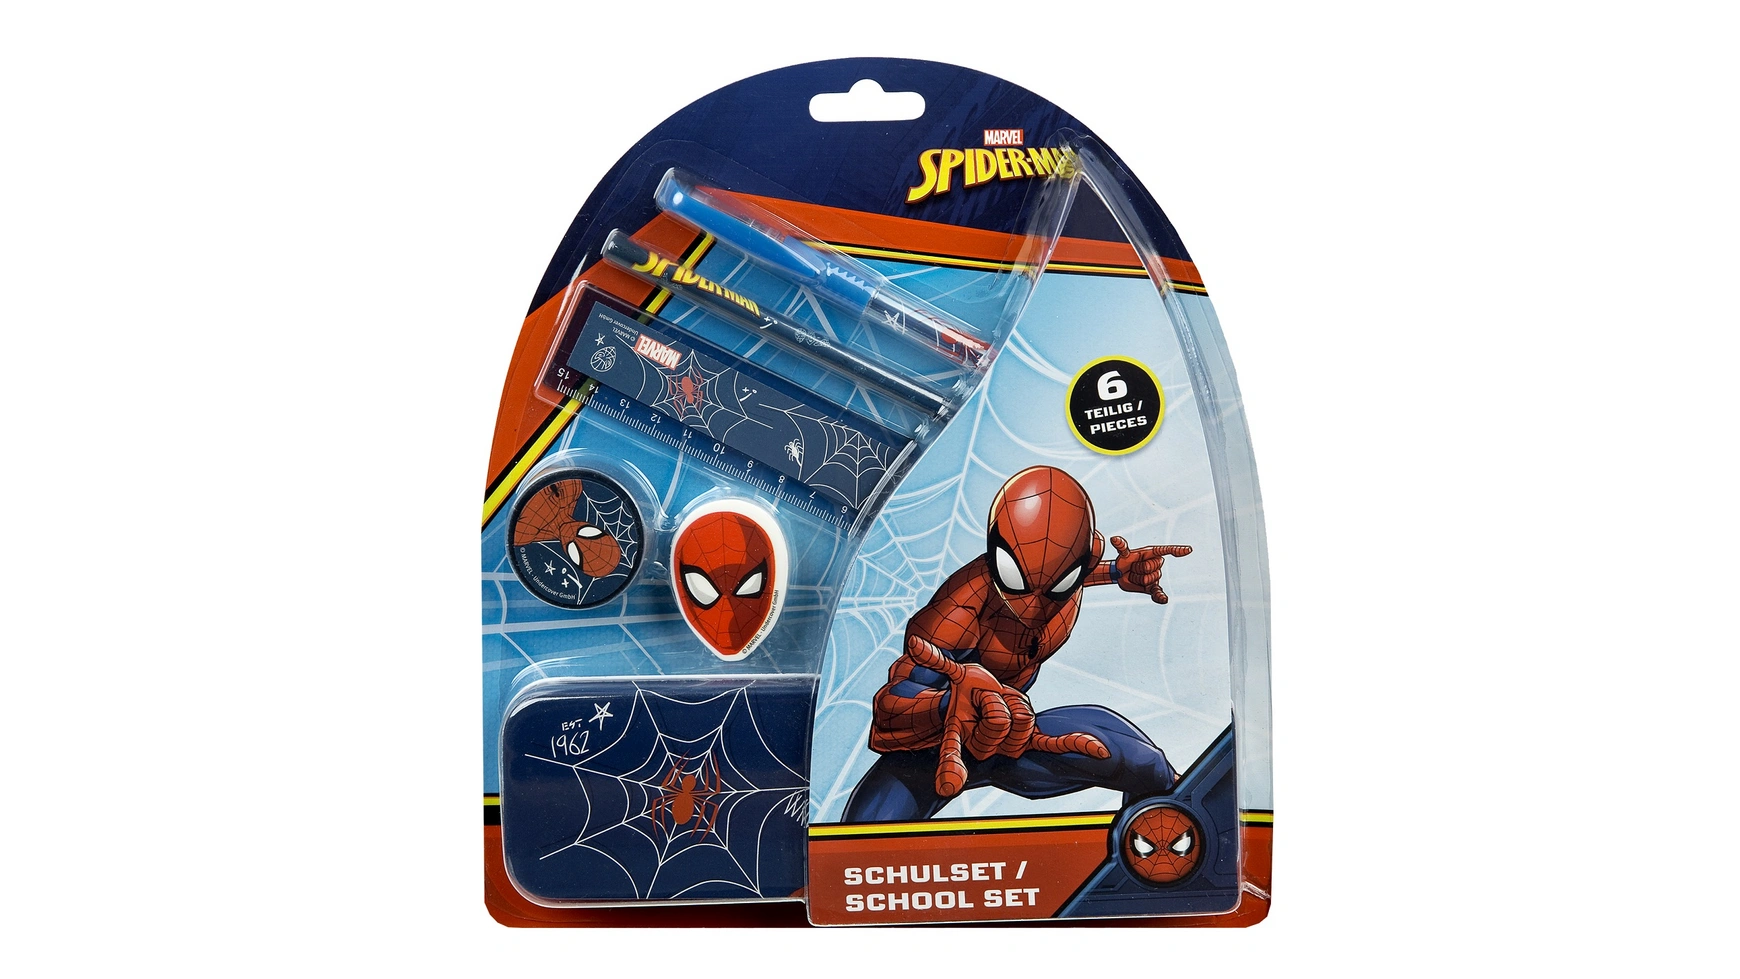 Undercover - школьный набор marvel spider-man, 6 предметов No Brand набор marvel spider man 2 фигурки